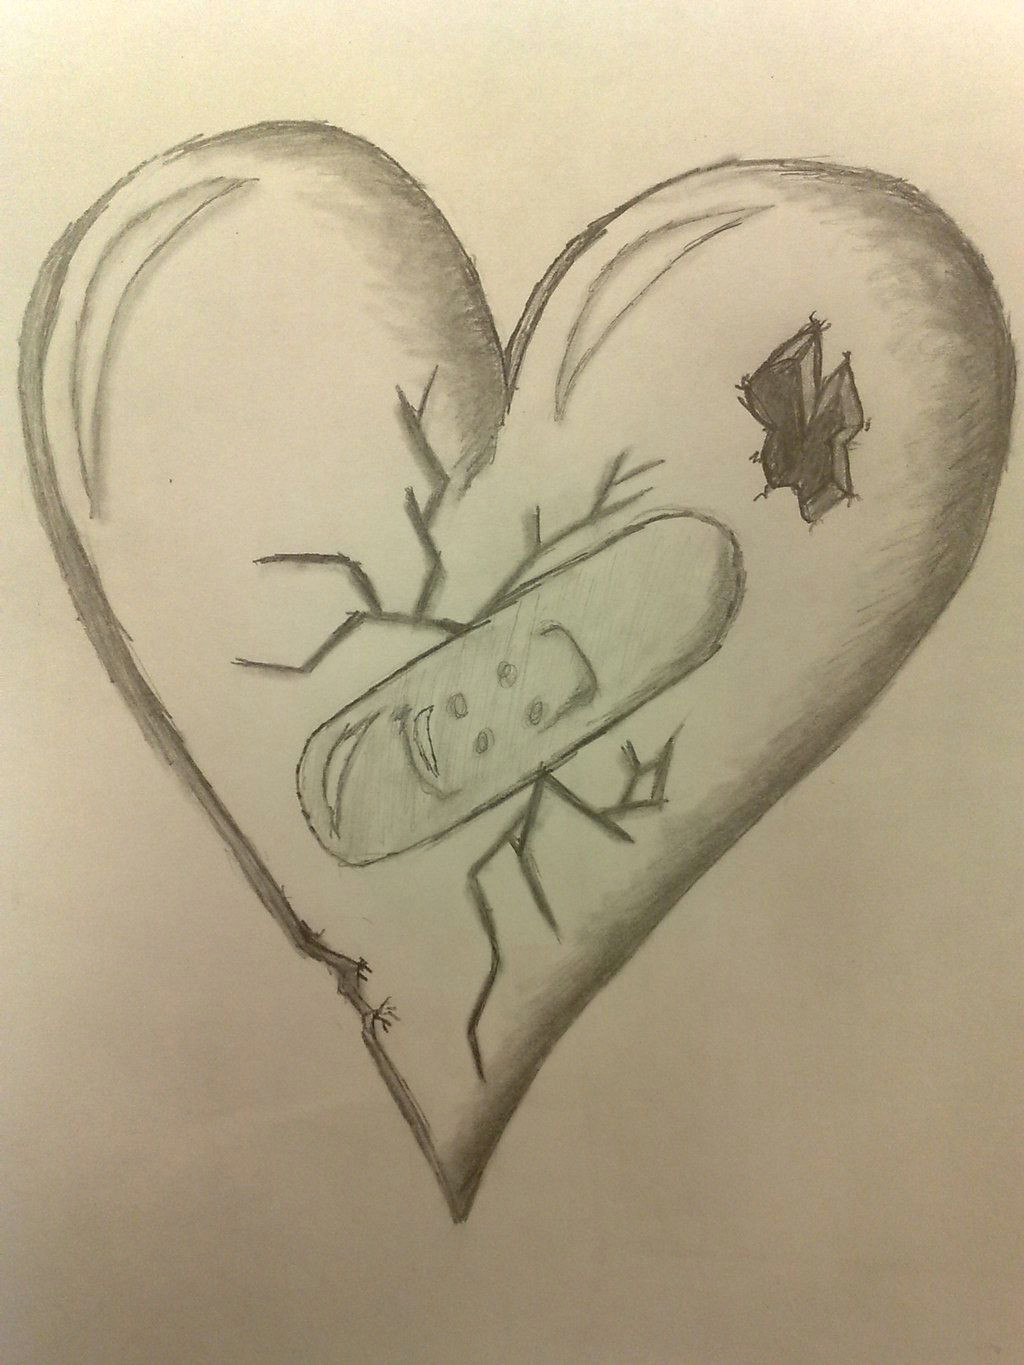 Tumblr Drawing Heartbreak Pretty Broken Hearts Drawings Free Download Cool B Broken Hearts